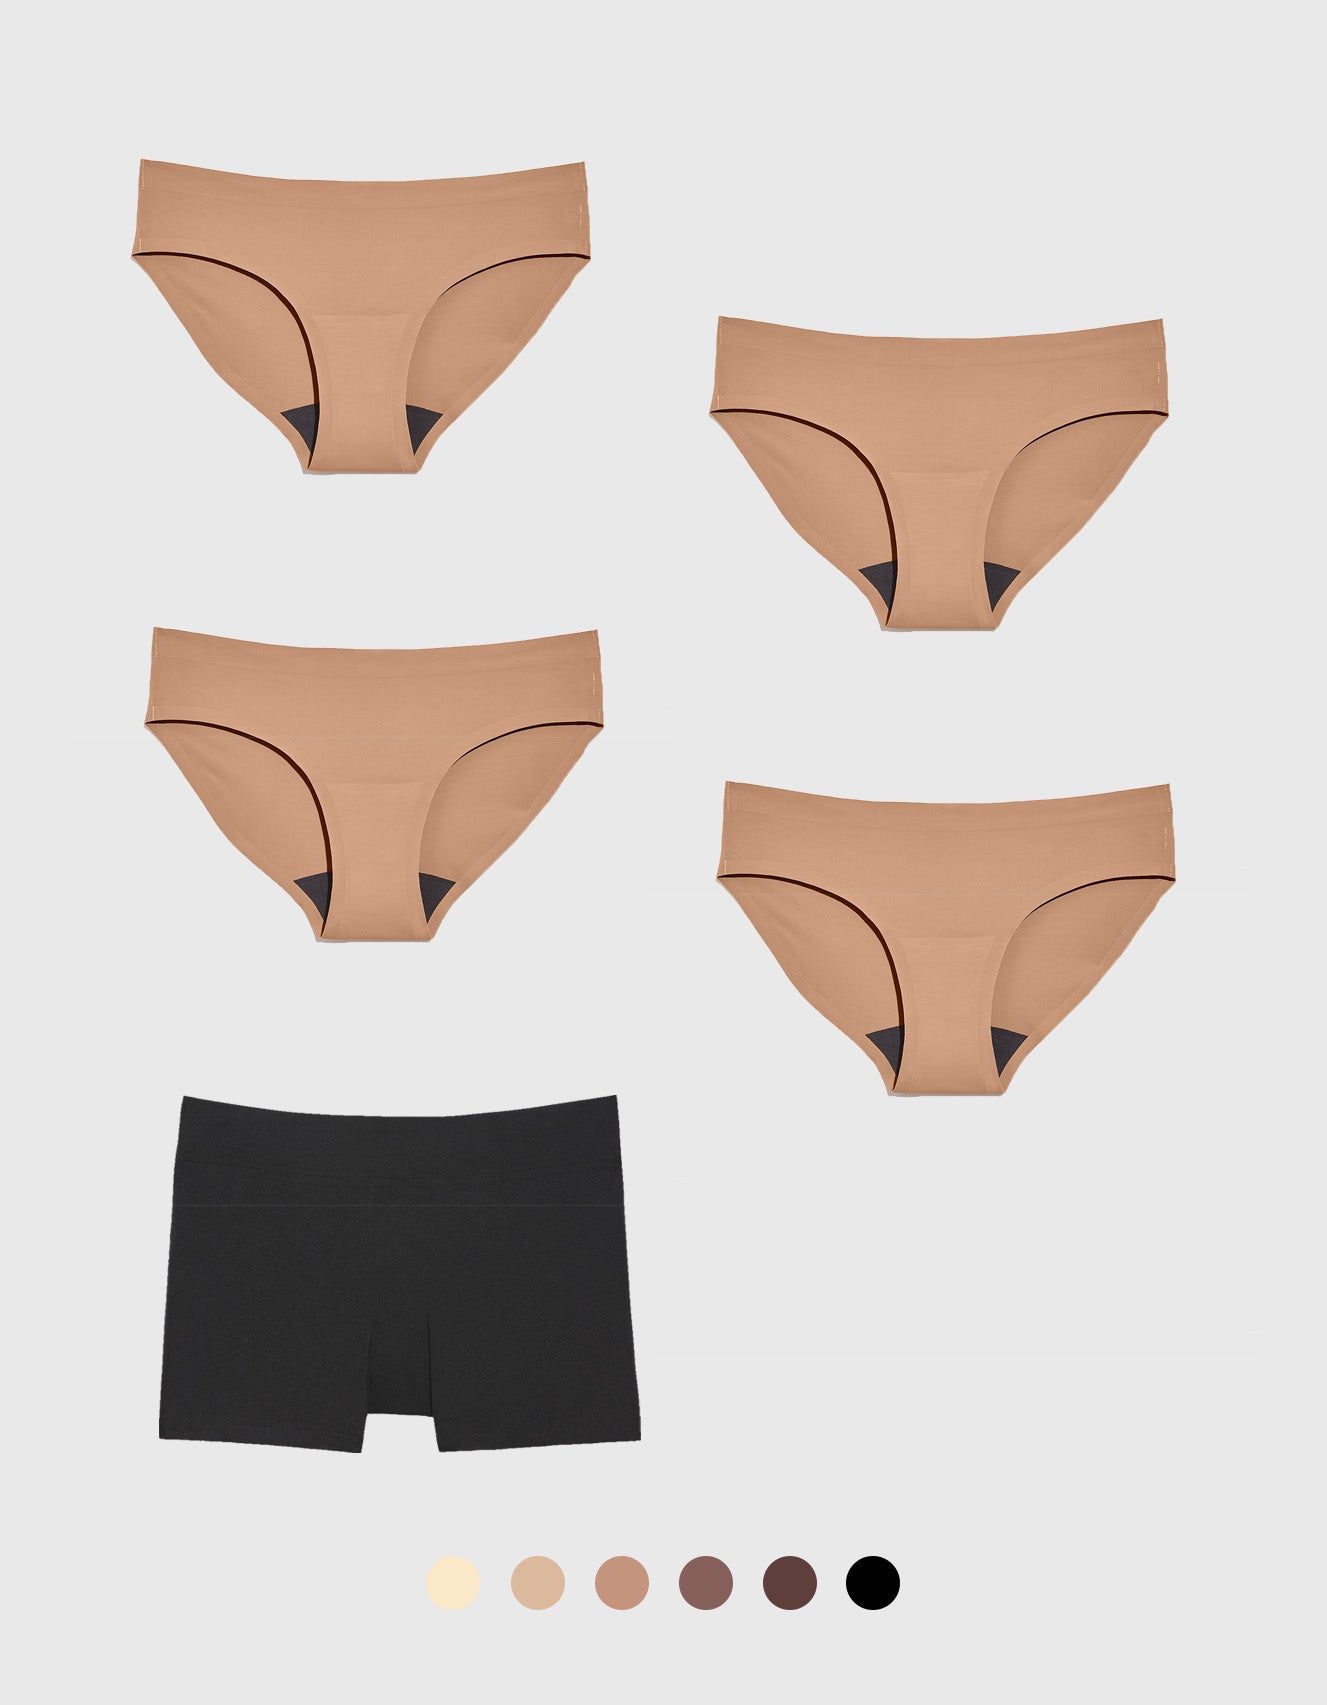 Knixwear Women's Athletic Bikini Underwear X-Small / Beige